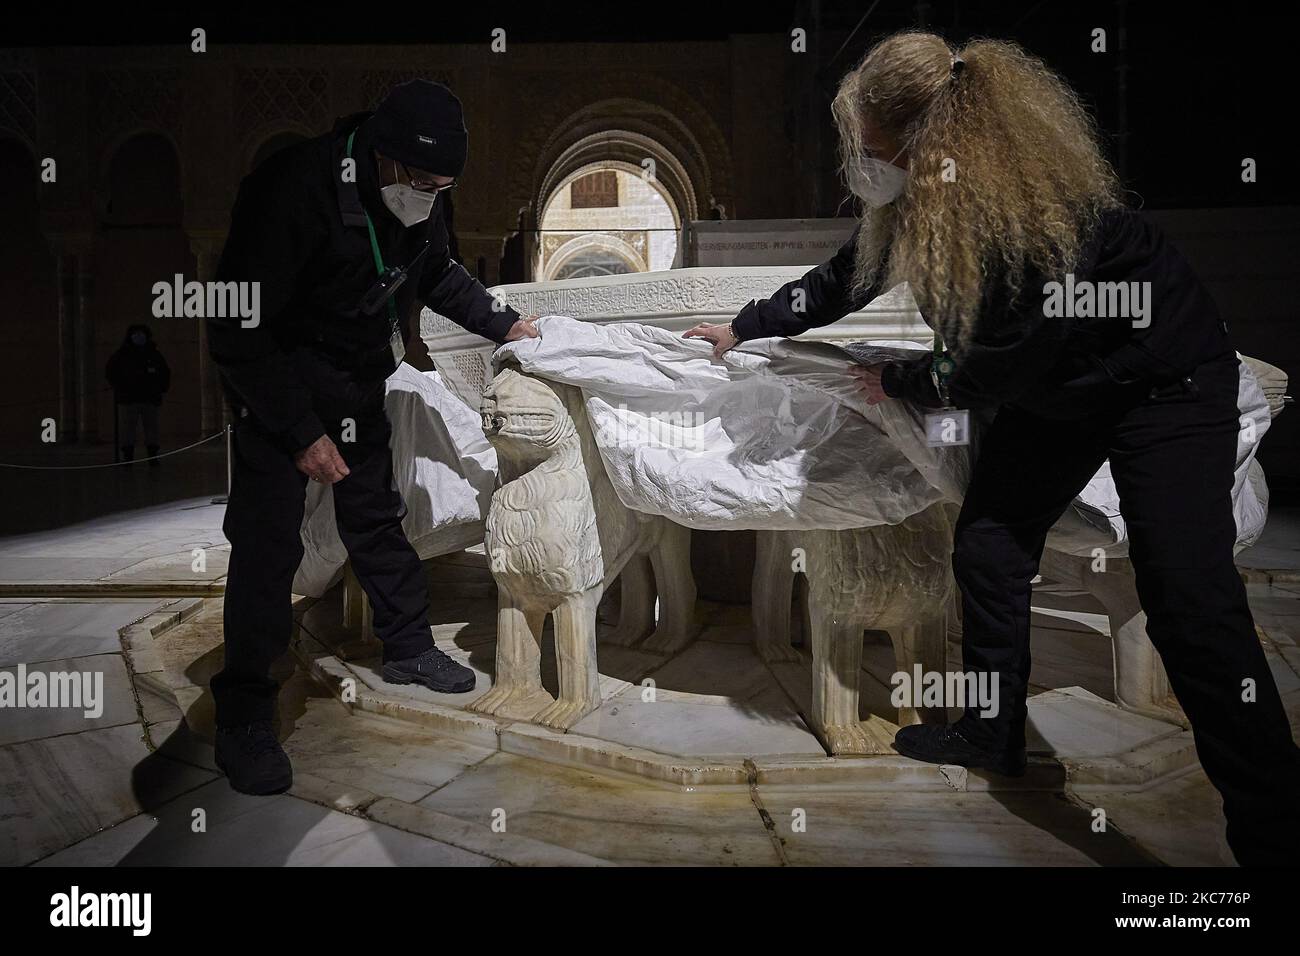 Les travailleurs de l'Alhambra protègent les lions de la célèbre fontaine des Lions de l'Alhambra avec une couverture thermique spéciale en raison des basses températures attendues avec la tempête Filomena sur 9 janvier 2020 à Grenade, en Espagne. L'Espagne est en alerte rouge pour la deuxième journée en raison de la tempête Filomena, qui a provoqué un temps exceptionnellement froid et de fortes chutes de neige. La Fontaine des Lions, dans le patio de los Leones de la Alhambra, a été rouverte après 10 ans de restauration en raison de l'état médiocre des circuits d'eau et du passage du temps et nécessite des précautions spécifiques pour éviter des dommages importants. (Photo de Fermin RO Banque D'Images